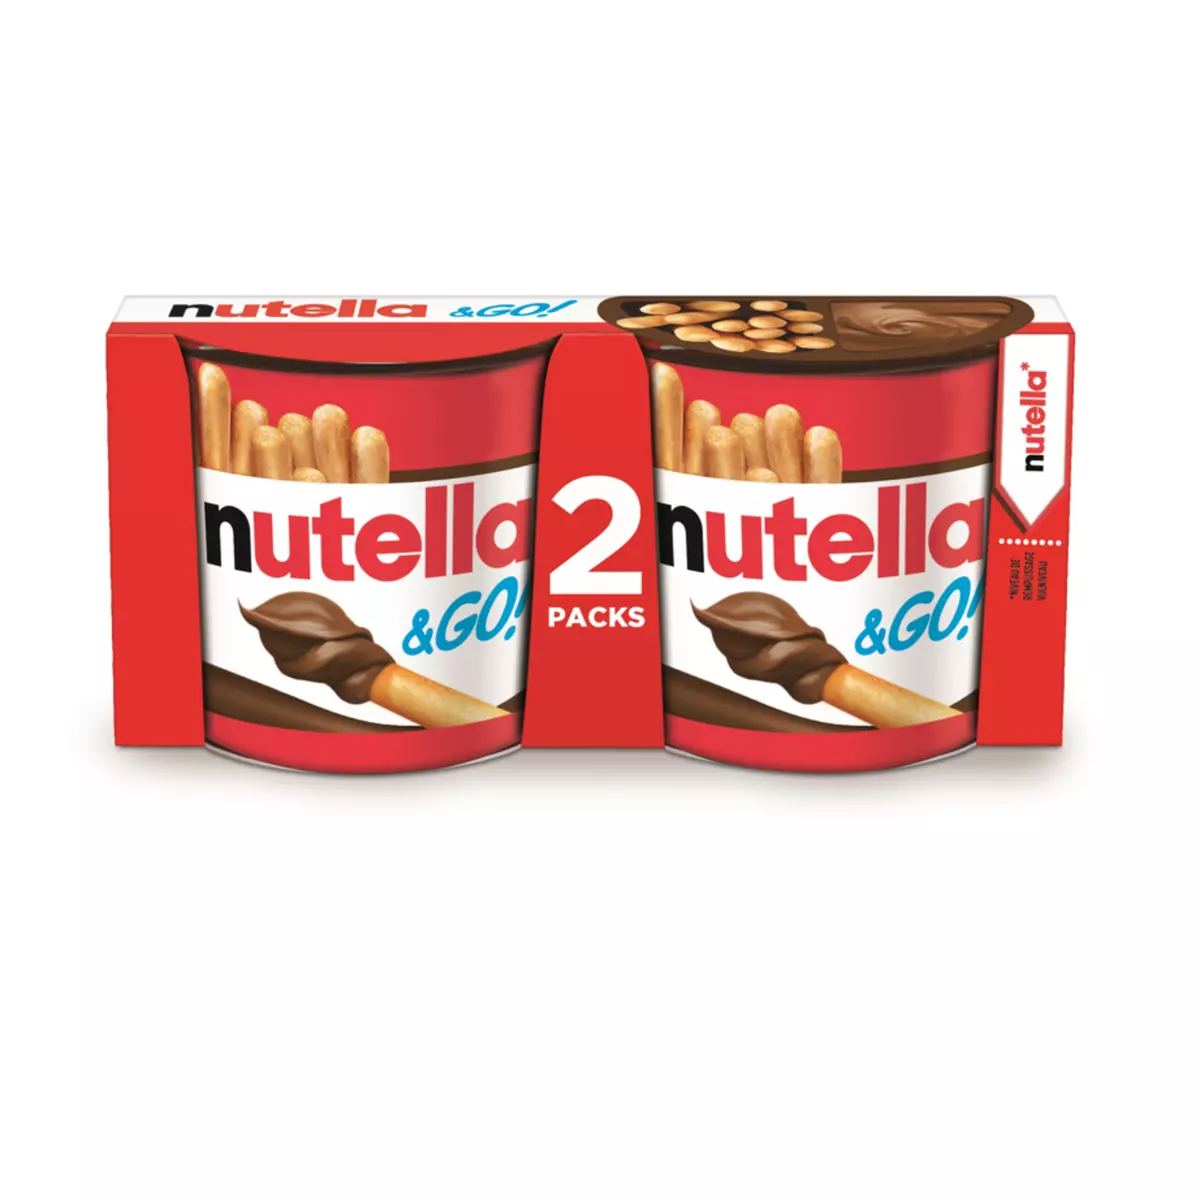 Livraison à domicile Promotion Nutella and Go !, Lot de 2(2x52)g